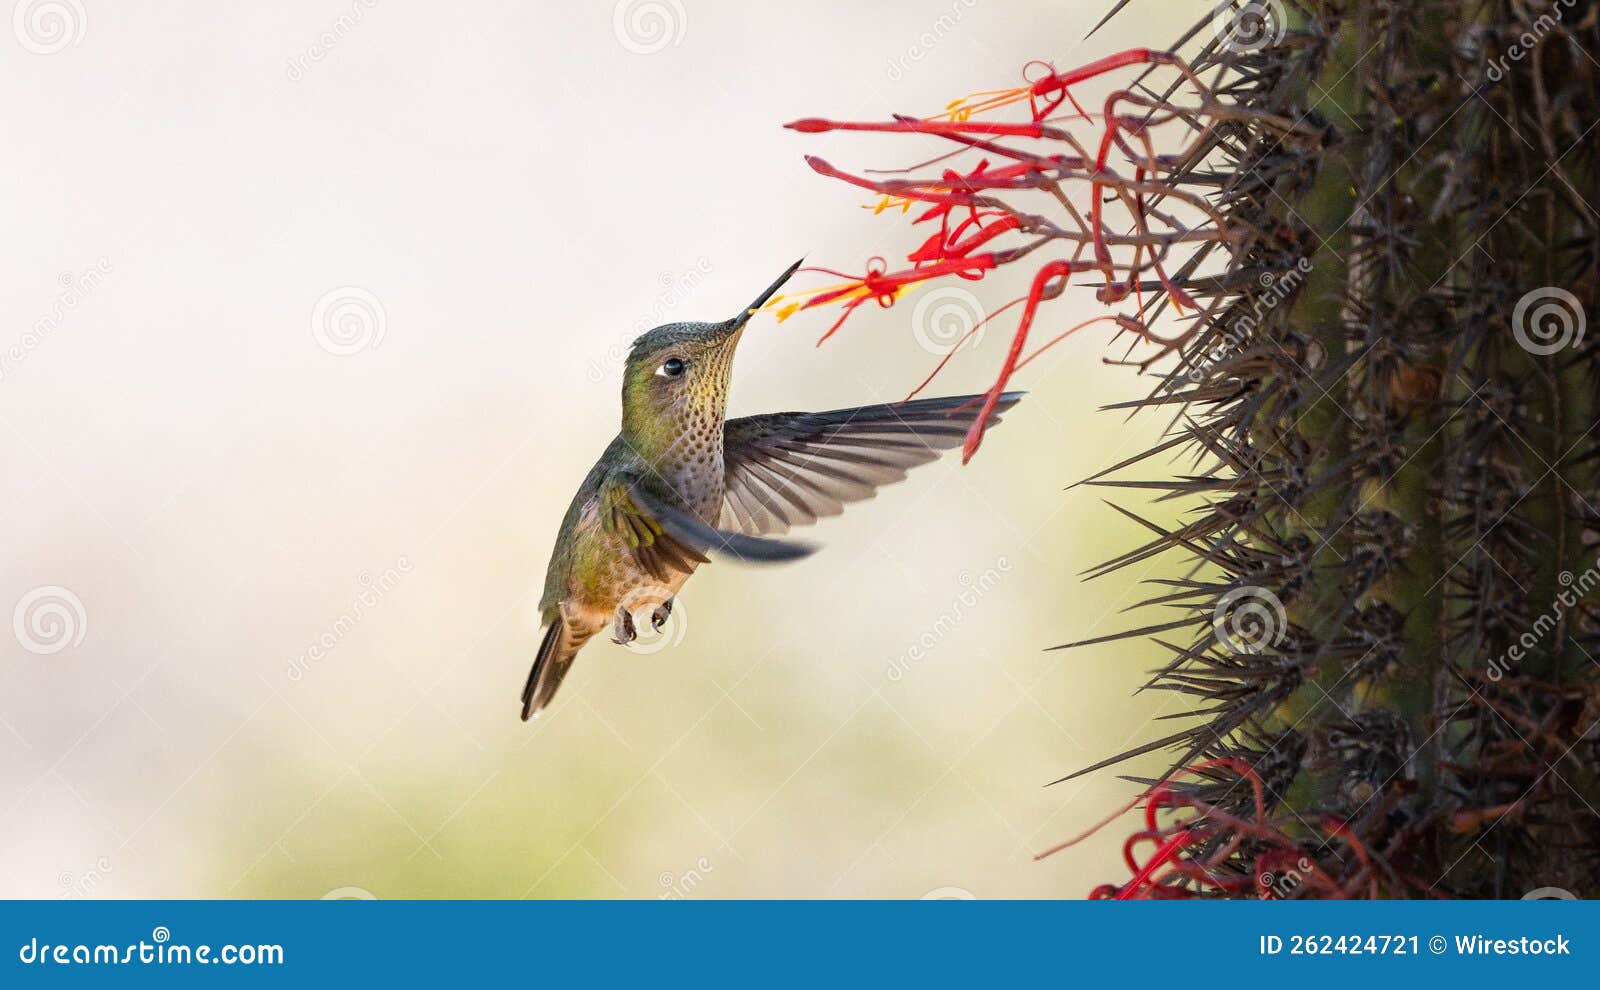 picaflor chibird sephanoides sephaniodes aves colibri chile fauna silvestre wild life naturaleza